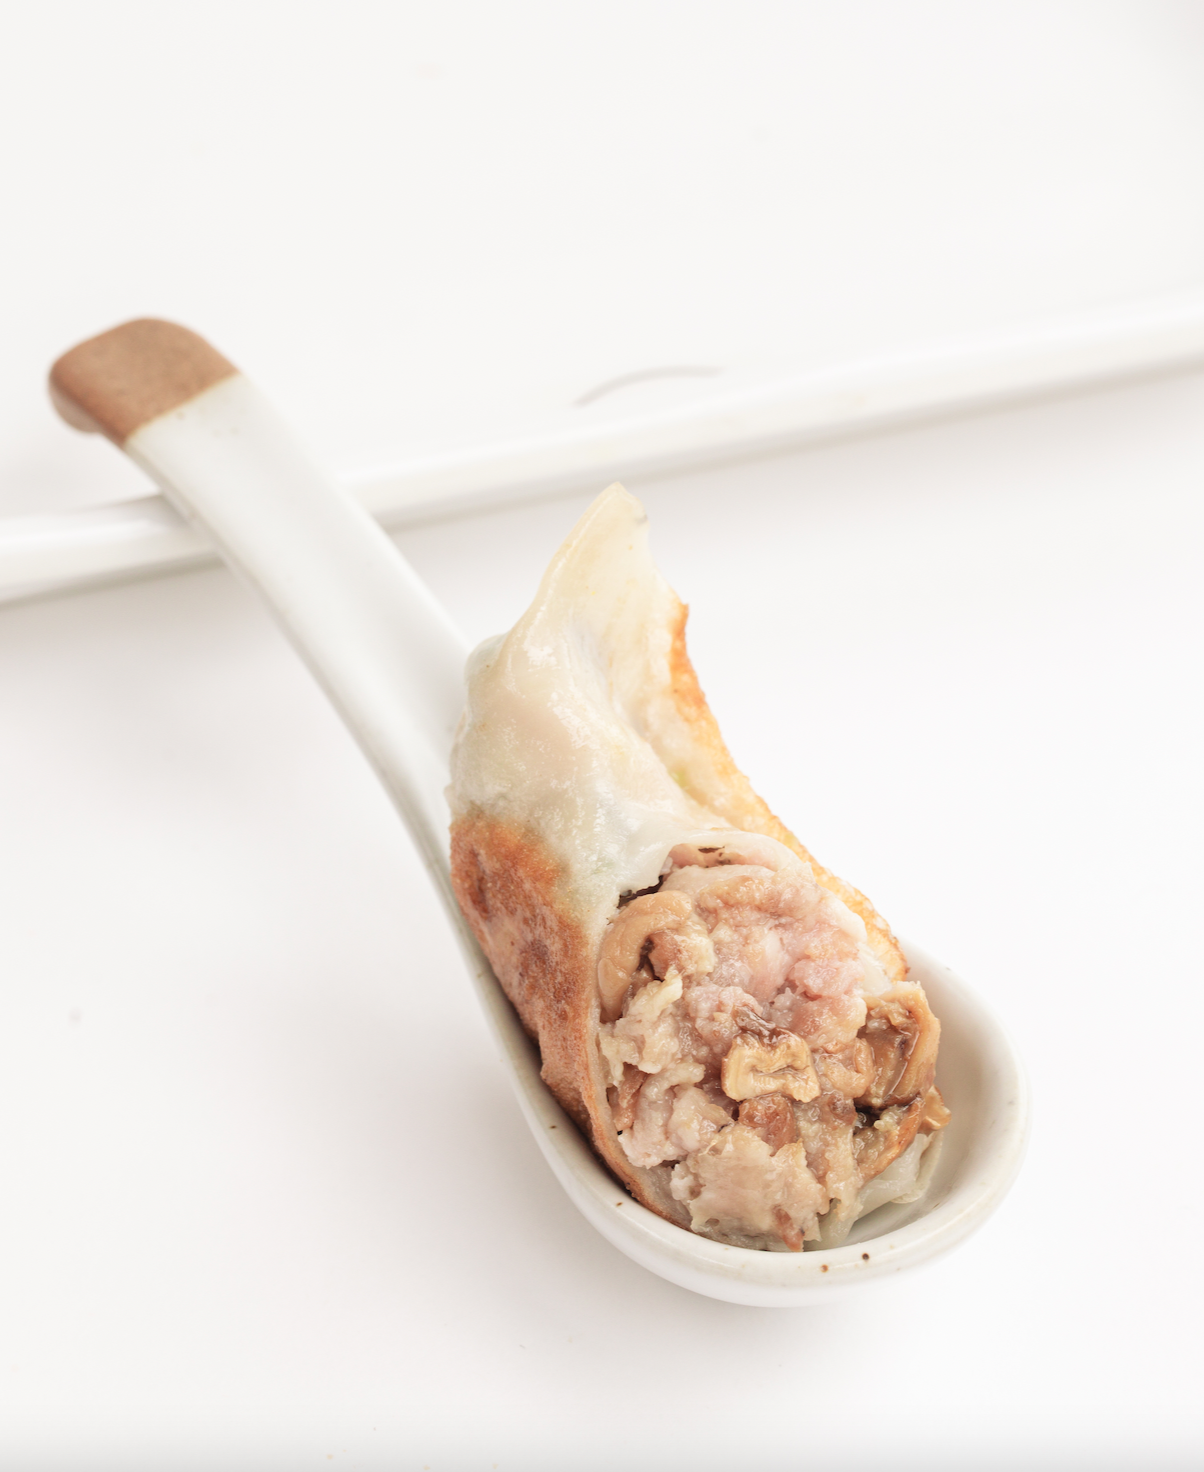 至尊松茸生餃 Raw Dumplings with Matsutake Mushroom & Pork (12pcs)